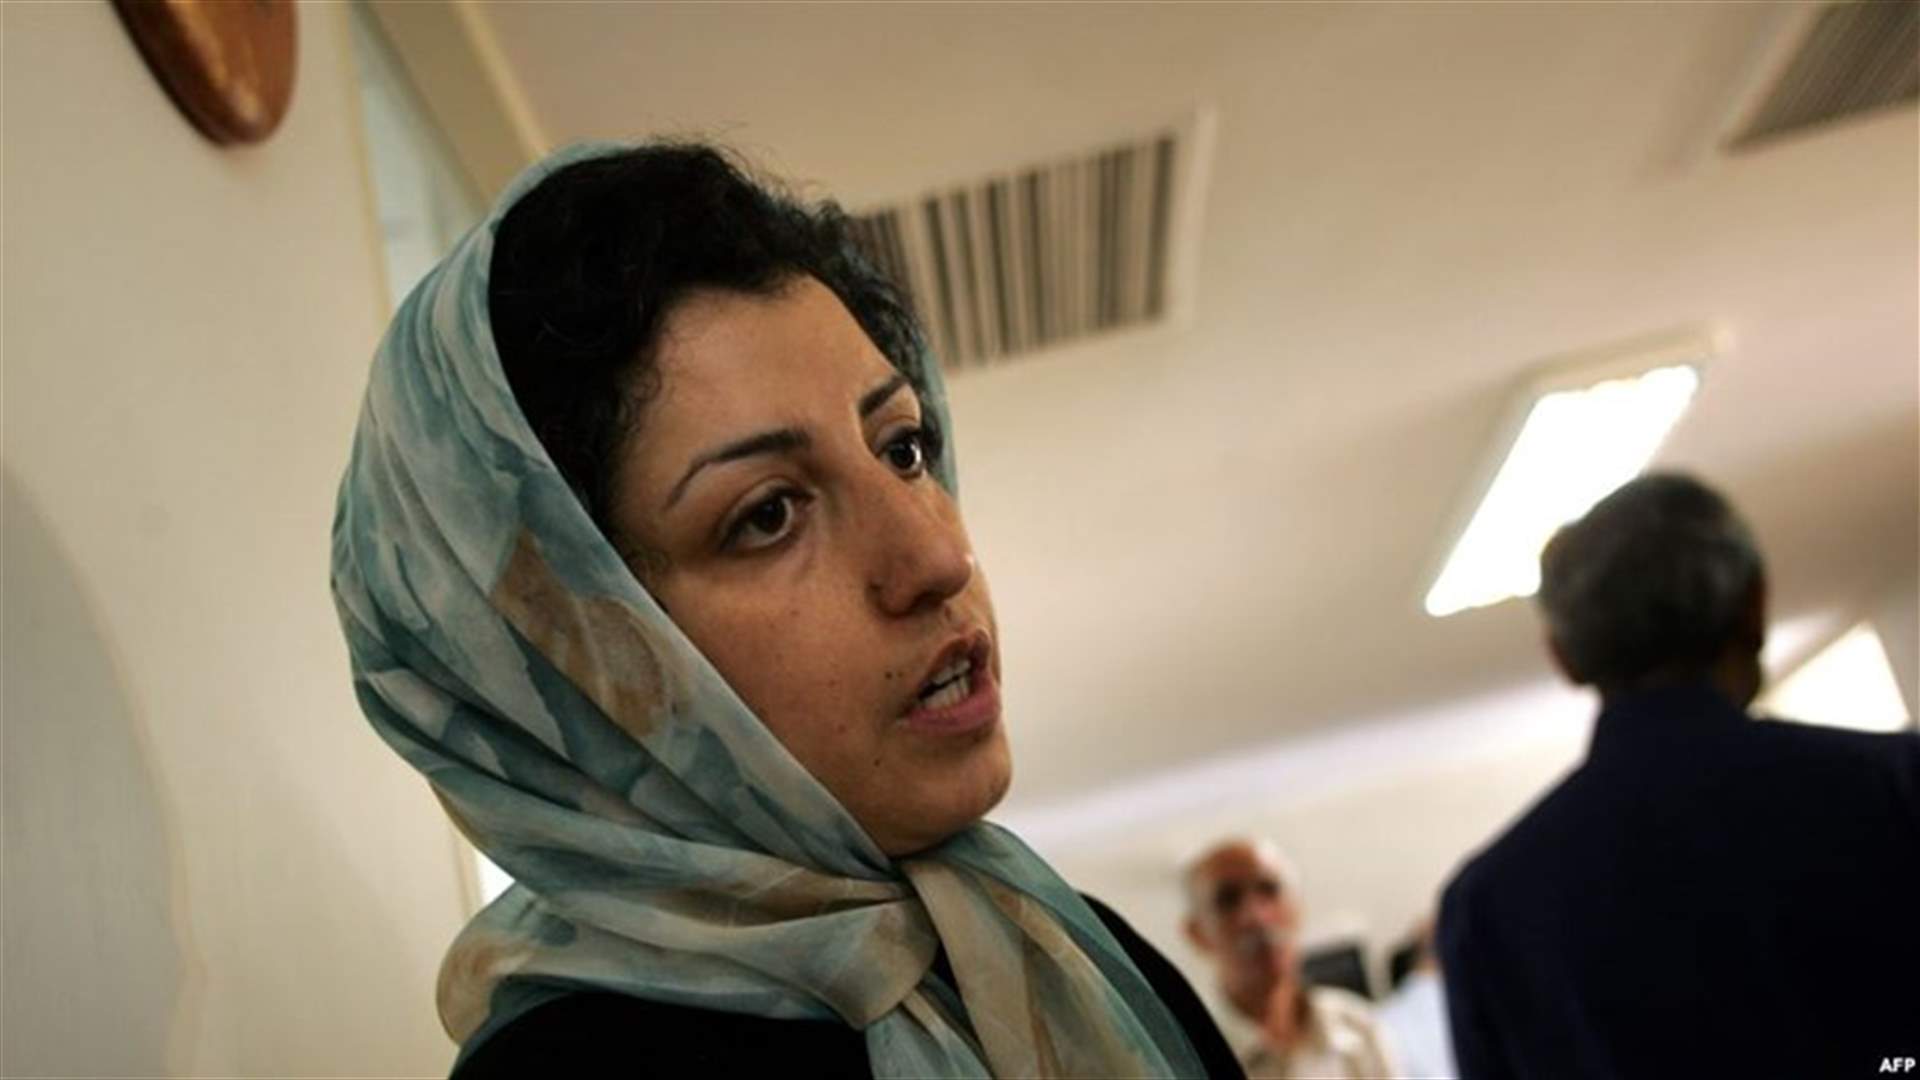 الحكم بالسجن عشر سنوات على صحافية إيرانية وناشطة في مجال حقوق الانسان